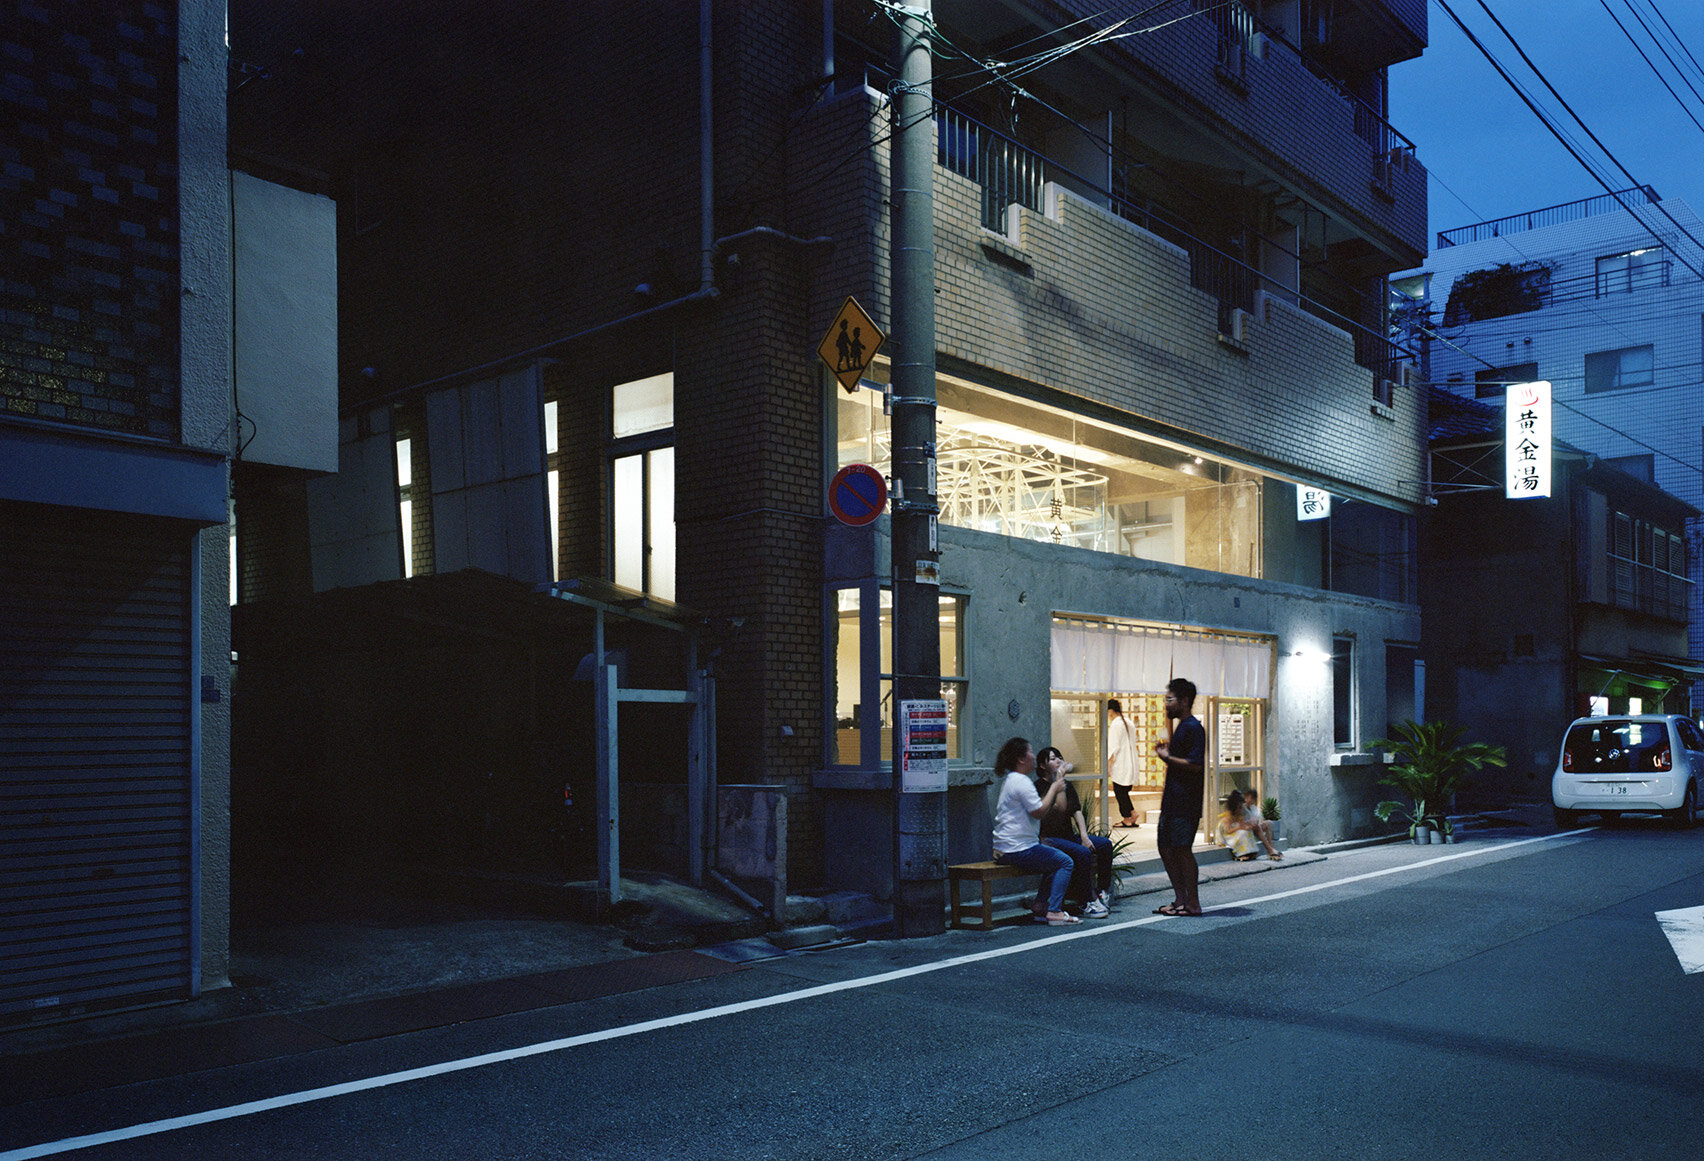 koganeyu-schemata-architect-sento-public-bath-house-renovation-japan-architecture_dezeen_1704_col_16.jpg